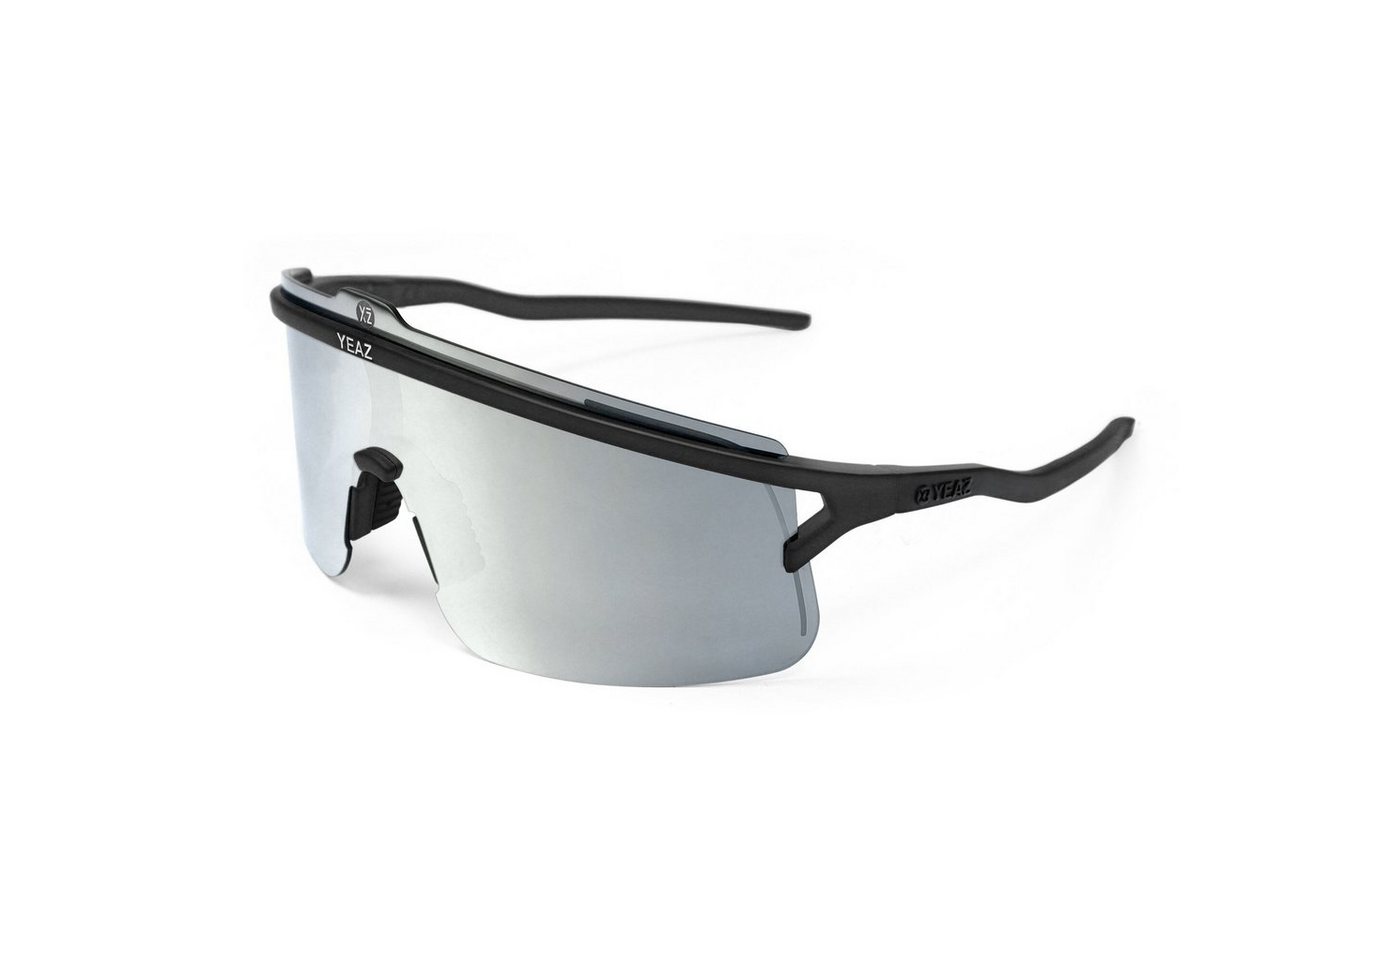 YEAZ Sportbrille SUNSHADE sport-sonnenbrille black/silver, Erlebe perfekte Sicht, Komfort und Style von YEAZ